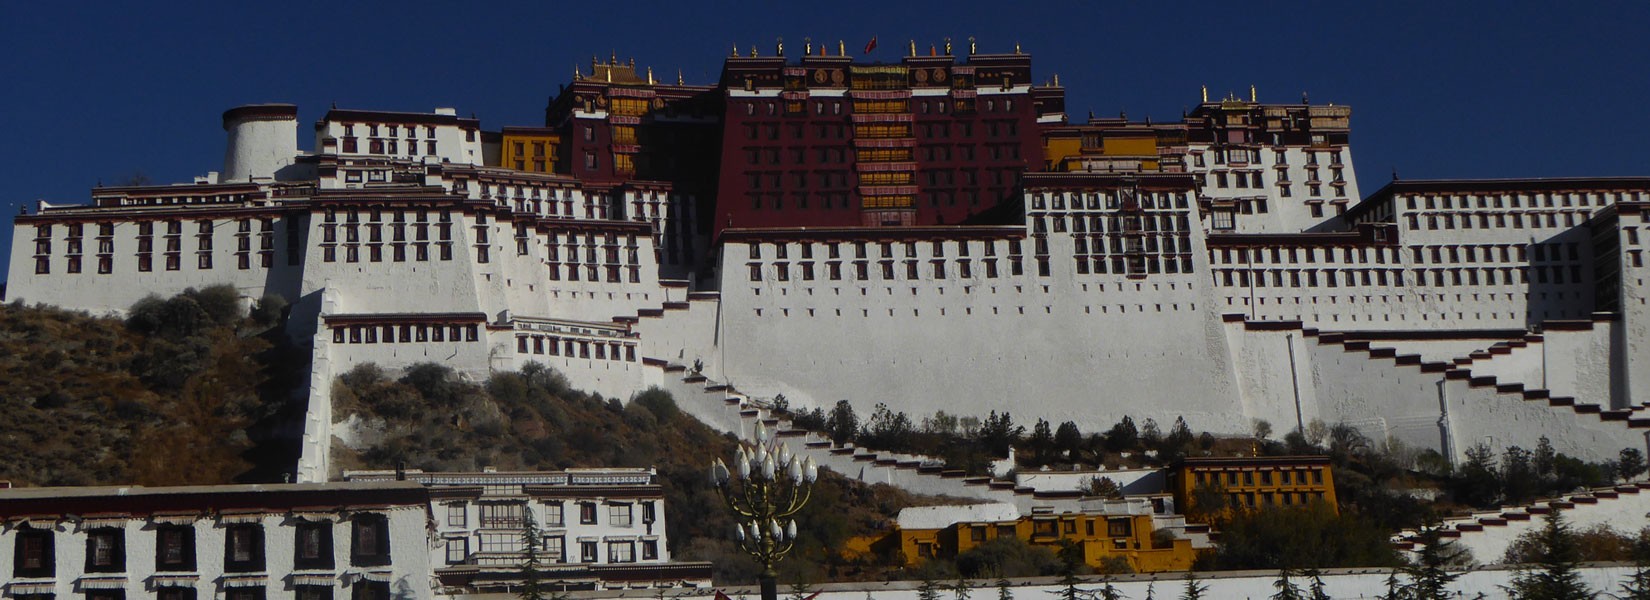 6-Days Lhasa City Tour.